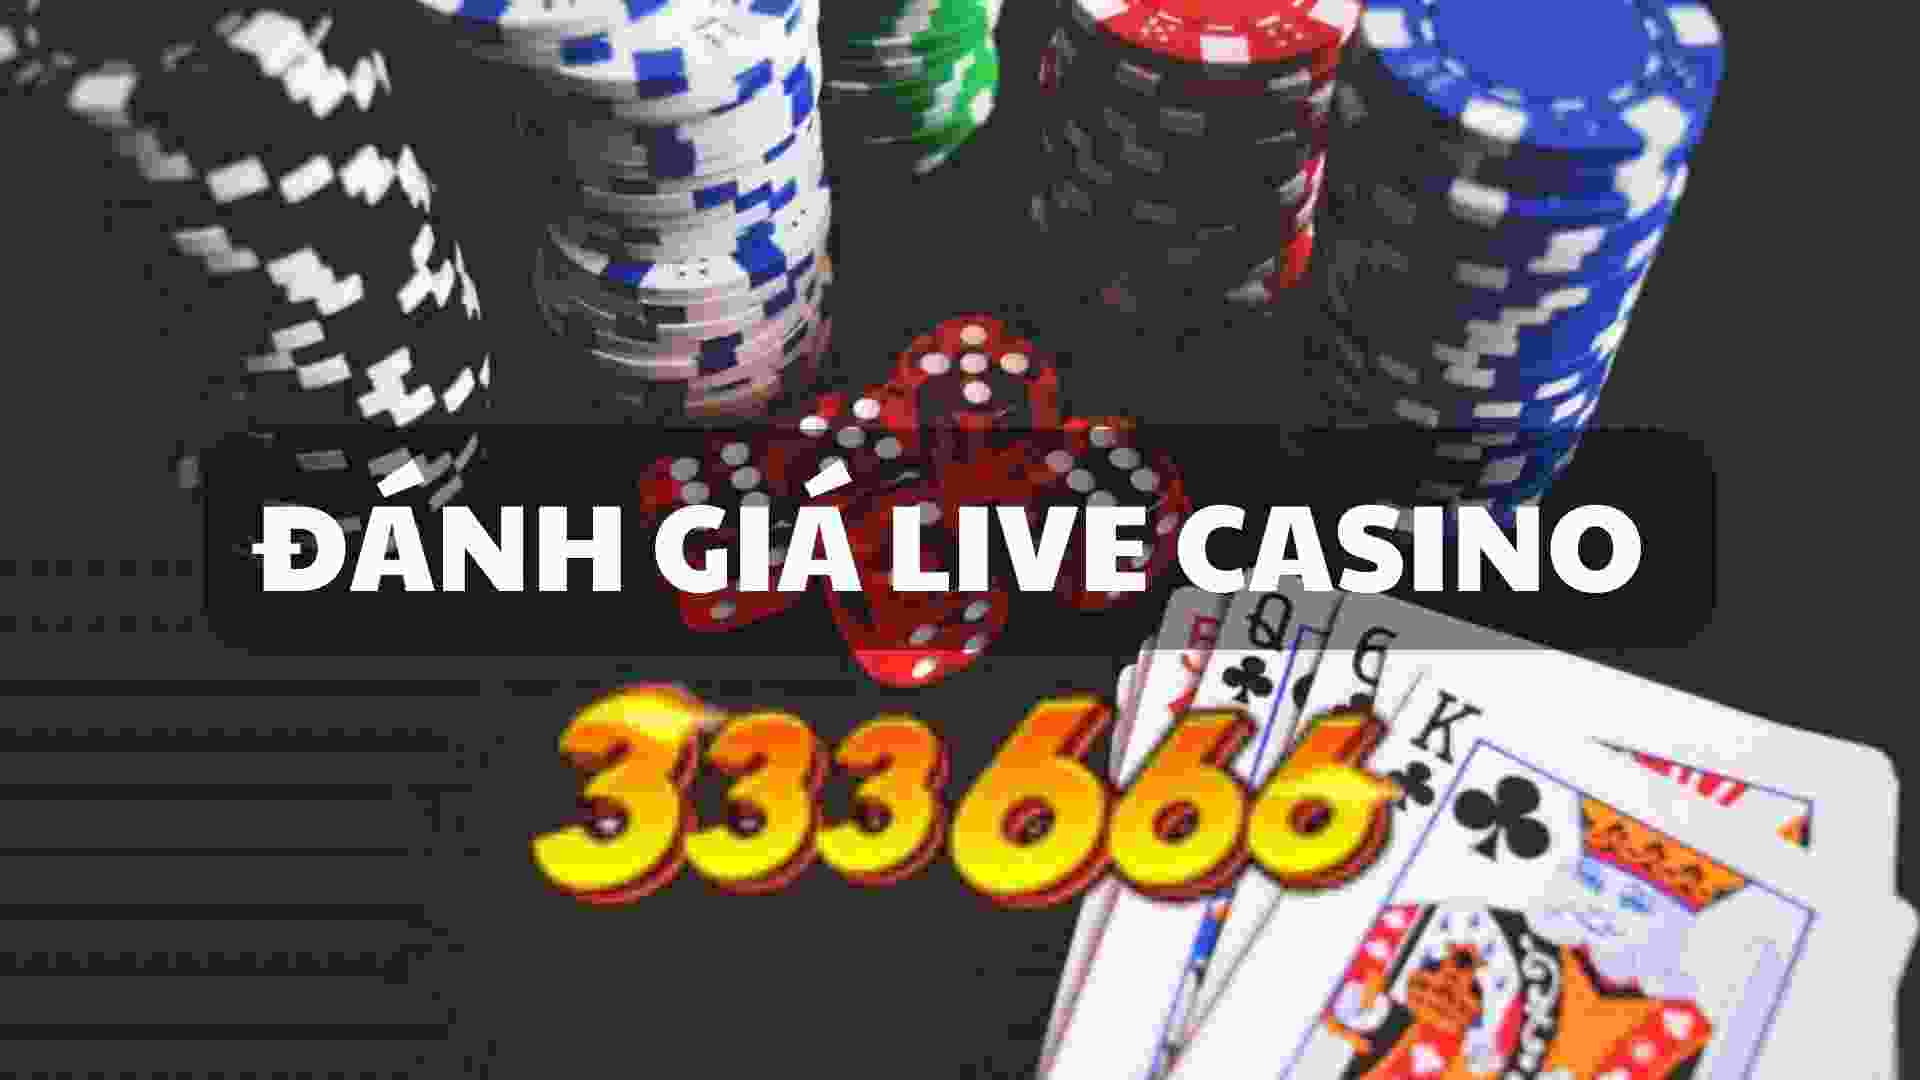 Đánh Giá về Live Casino 333666 Mới Nhất